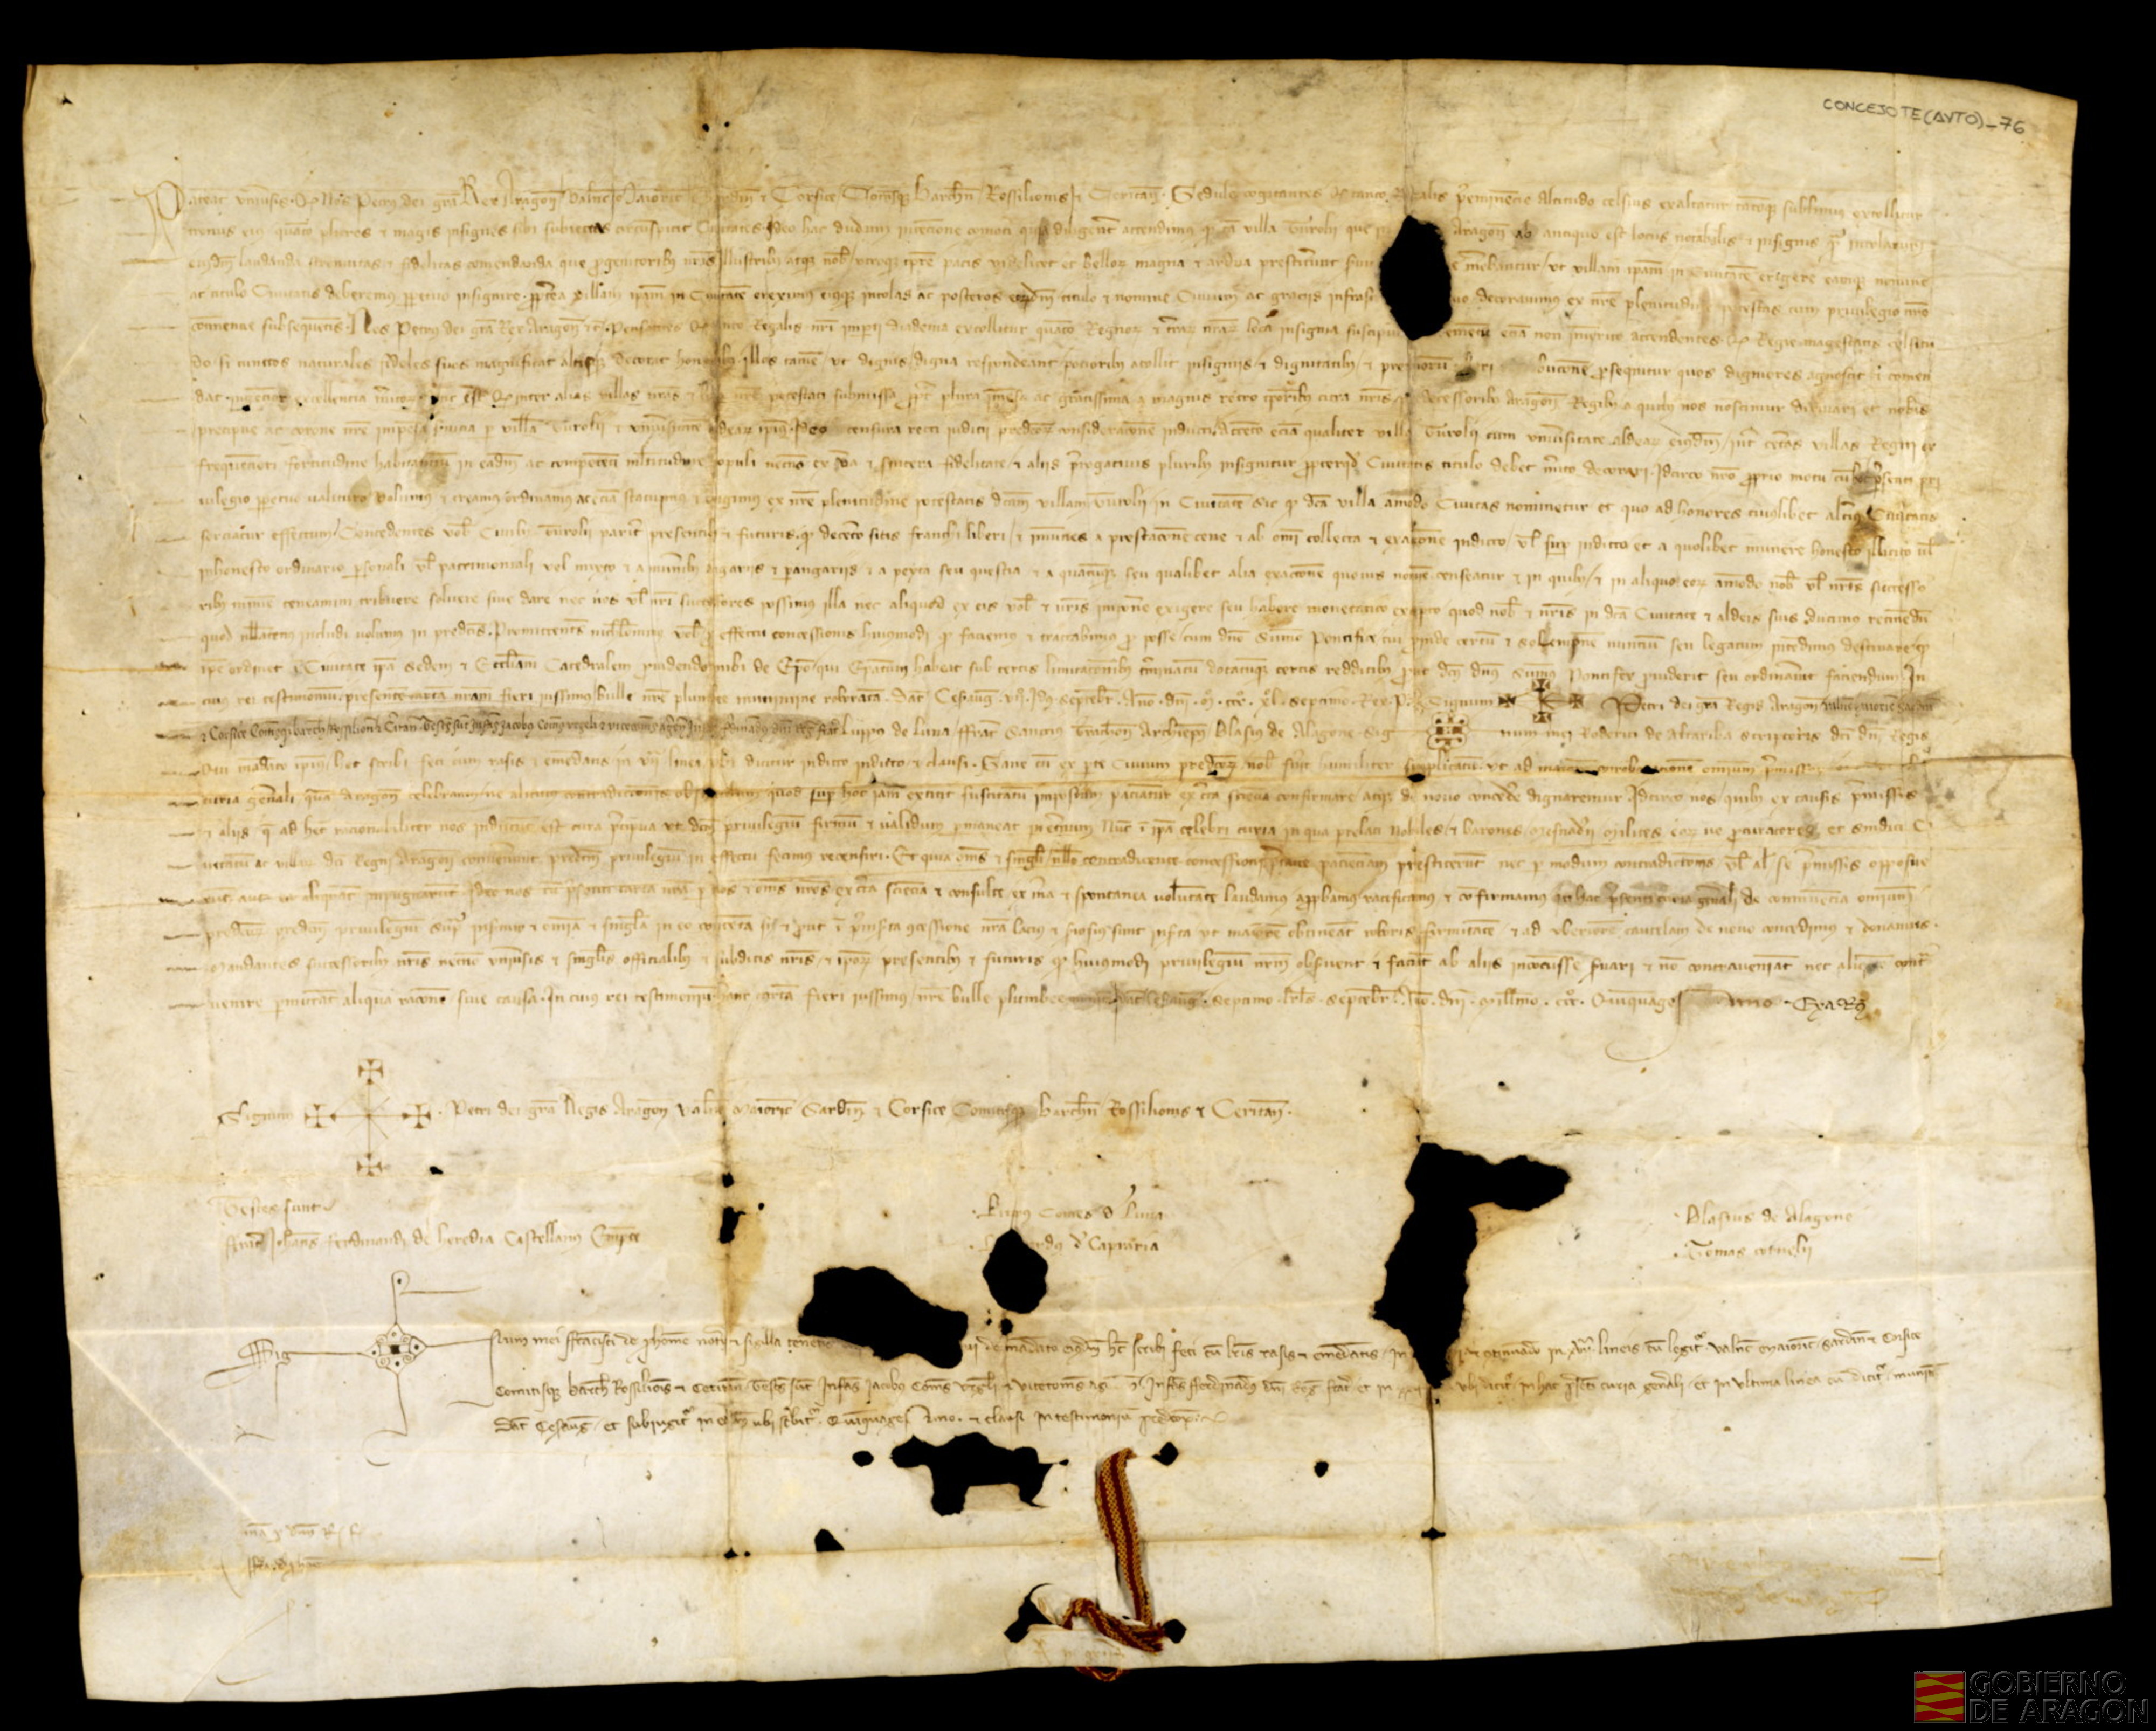 Privilegio del rey Pedro IV confirmando y ratificando el dado en 1347, concediendo el título de ciudad a Teruel